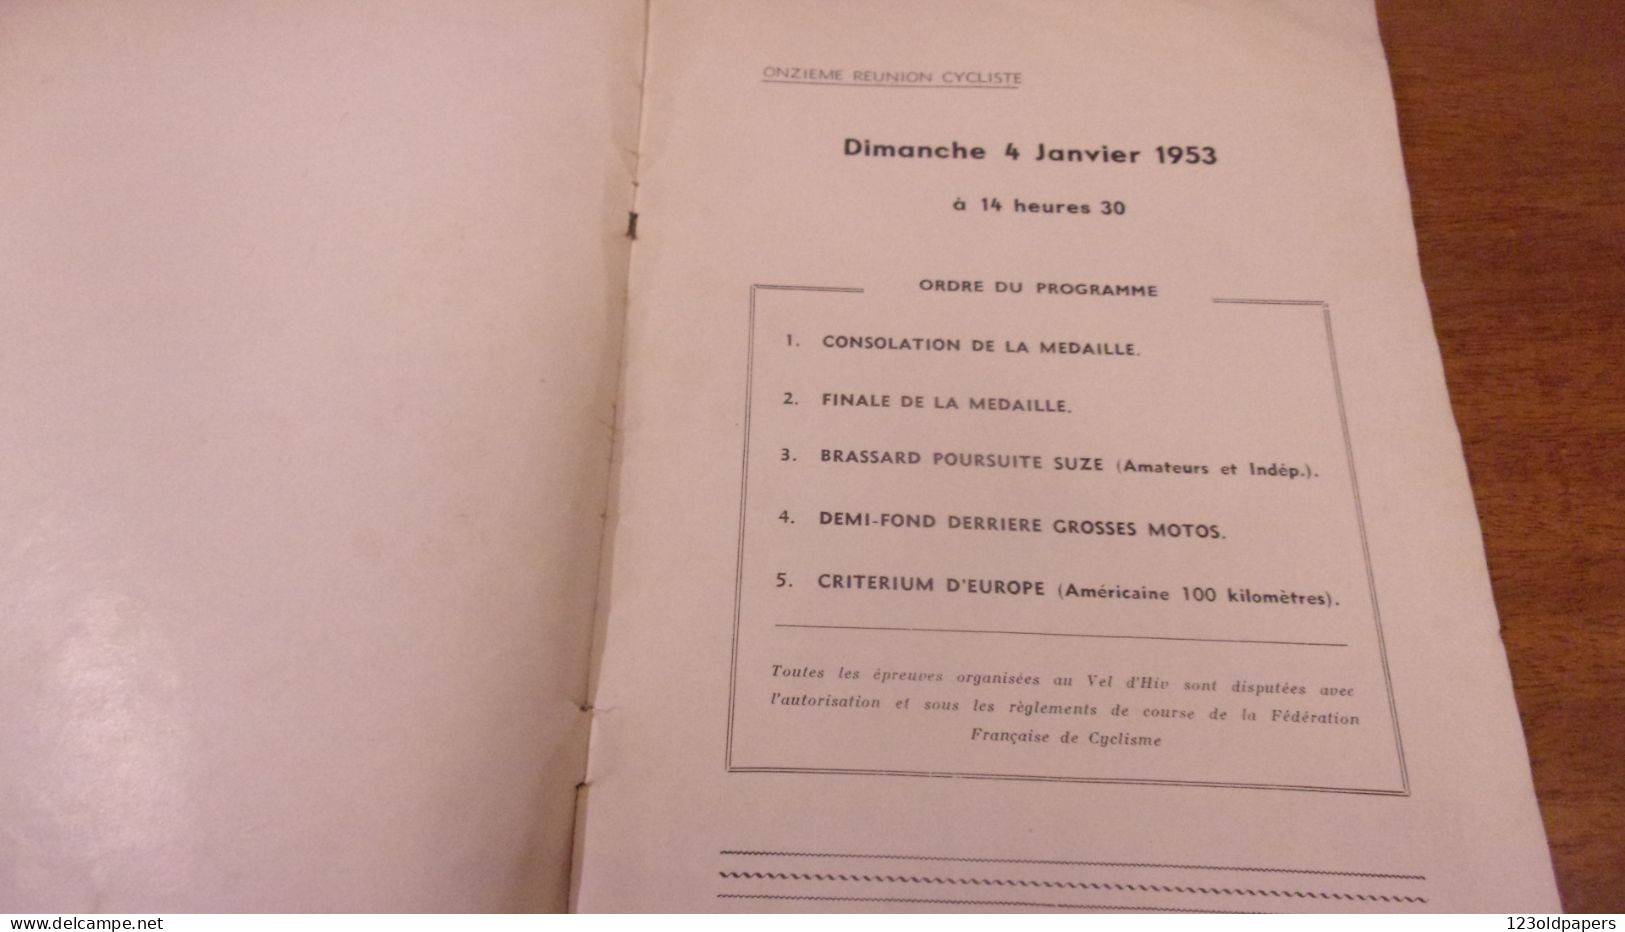 CYCLE VELO PROGRAMME VEL D HIV PALAIS DES SPORTS  SAISON 1952 1953 - Programs